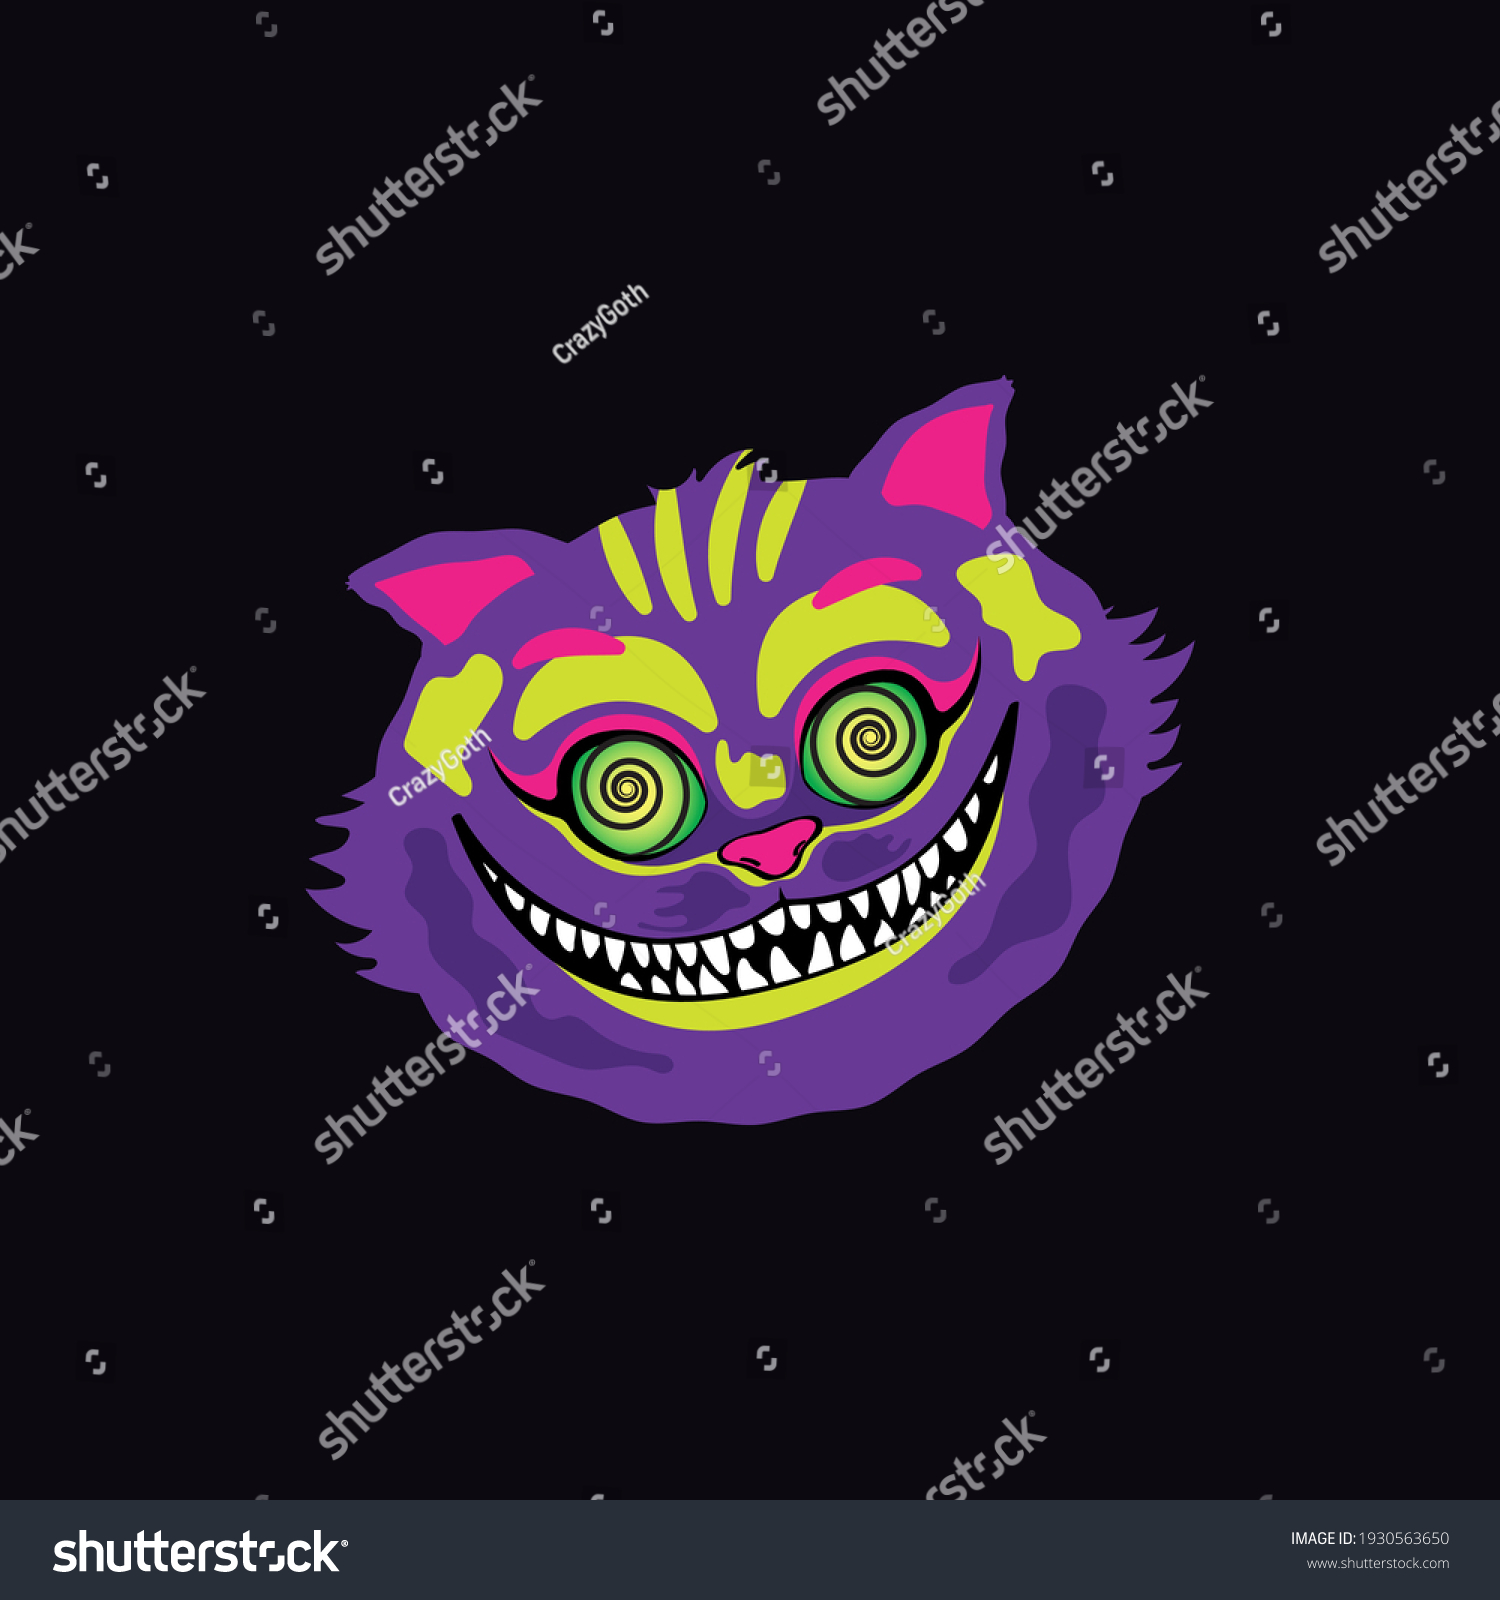 SVG of vector illustration smile of a crazy cat svg